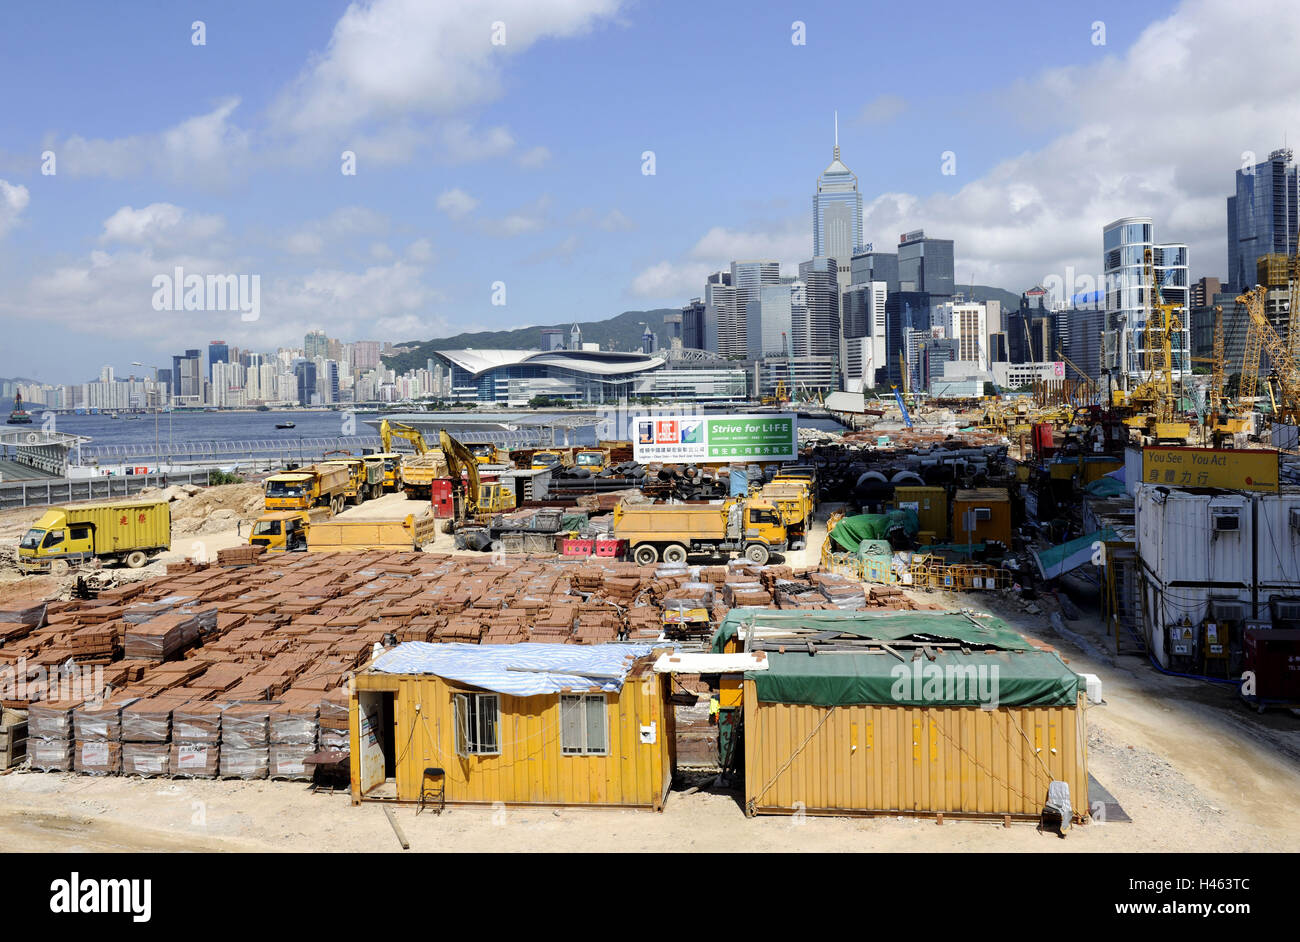 High rises, men at work, building materials, supports, Hong Kong, China, Stock Photo